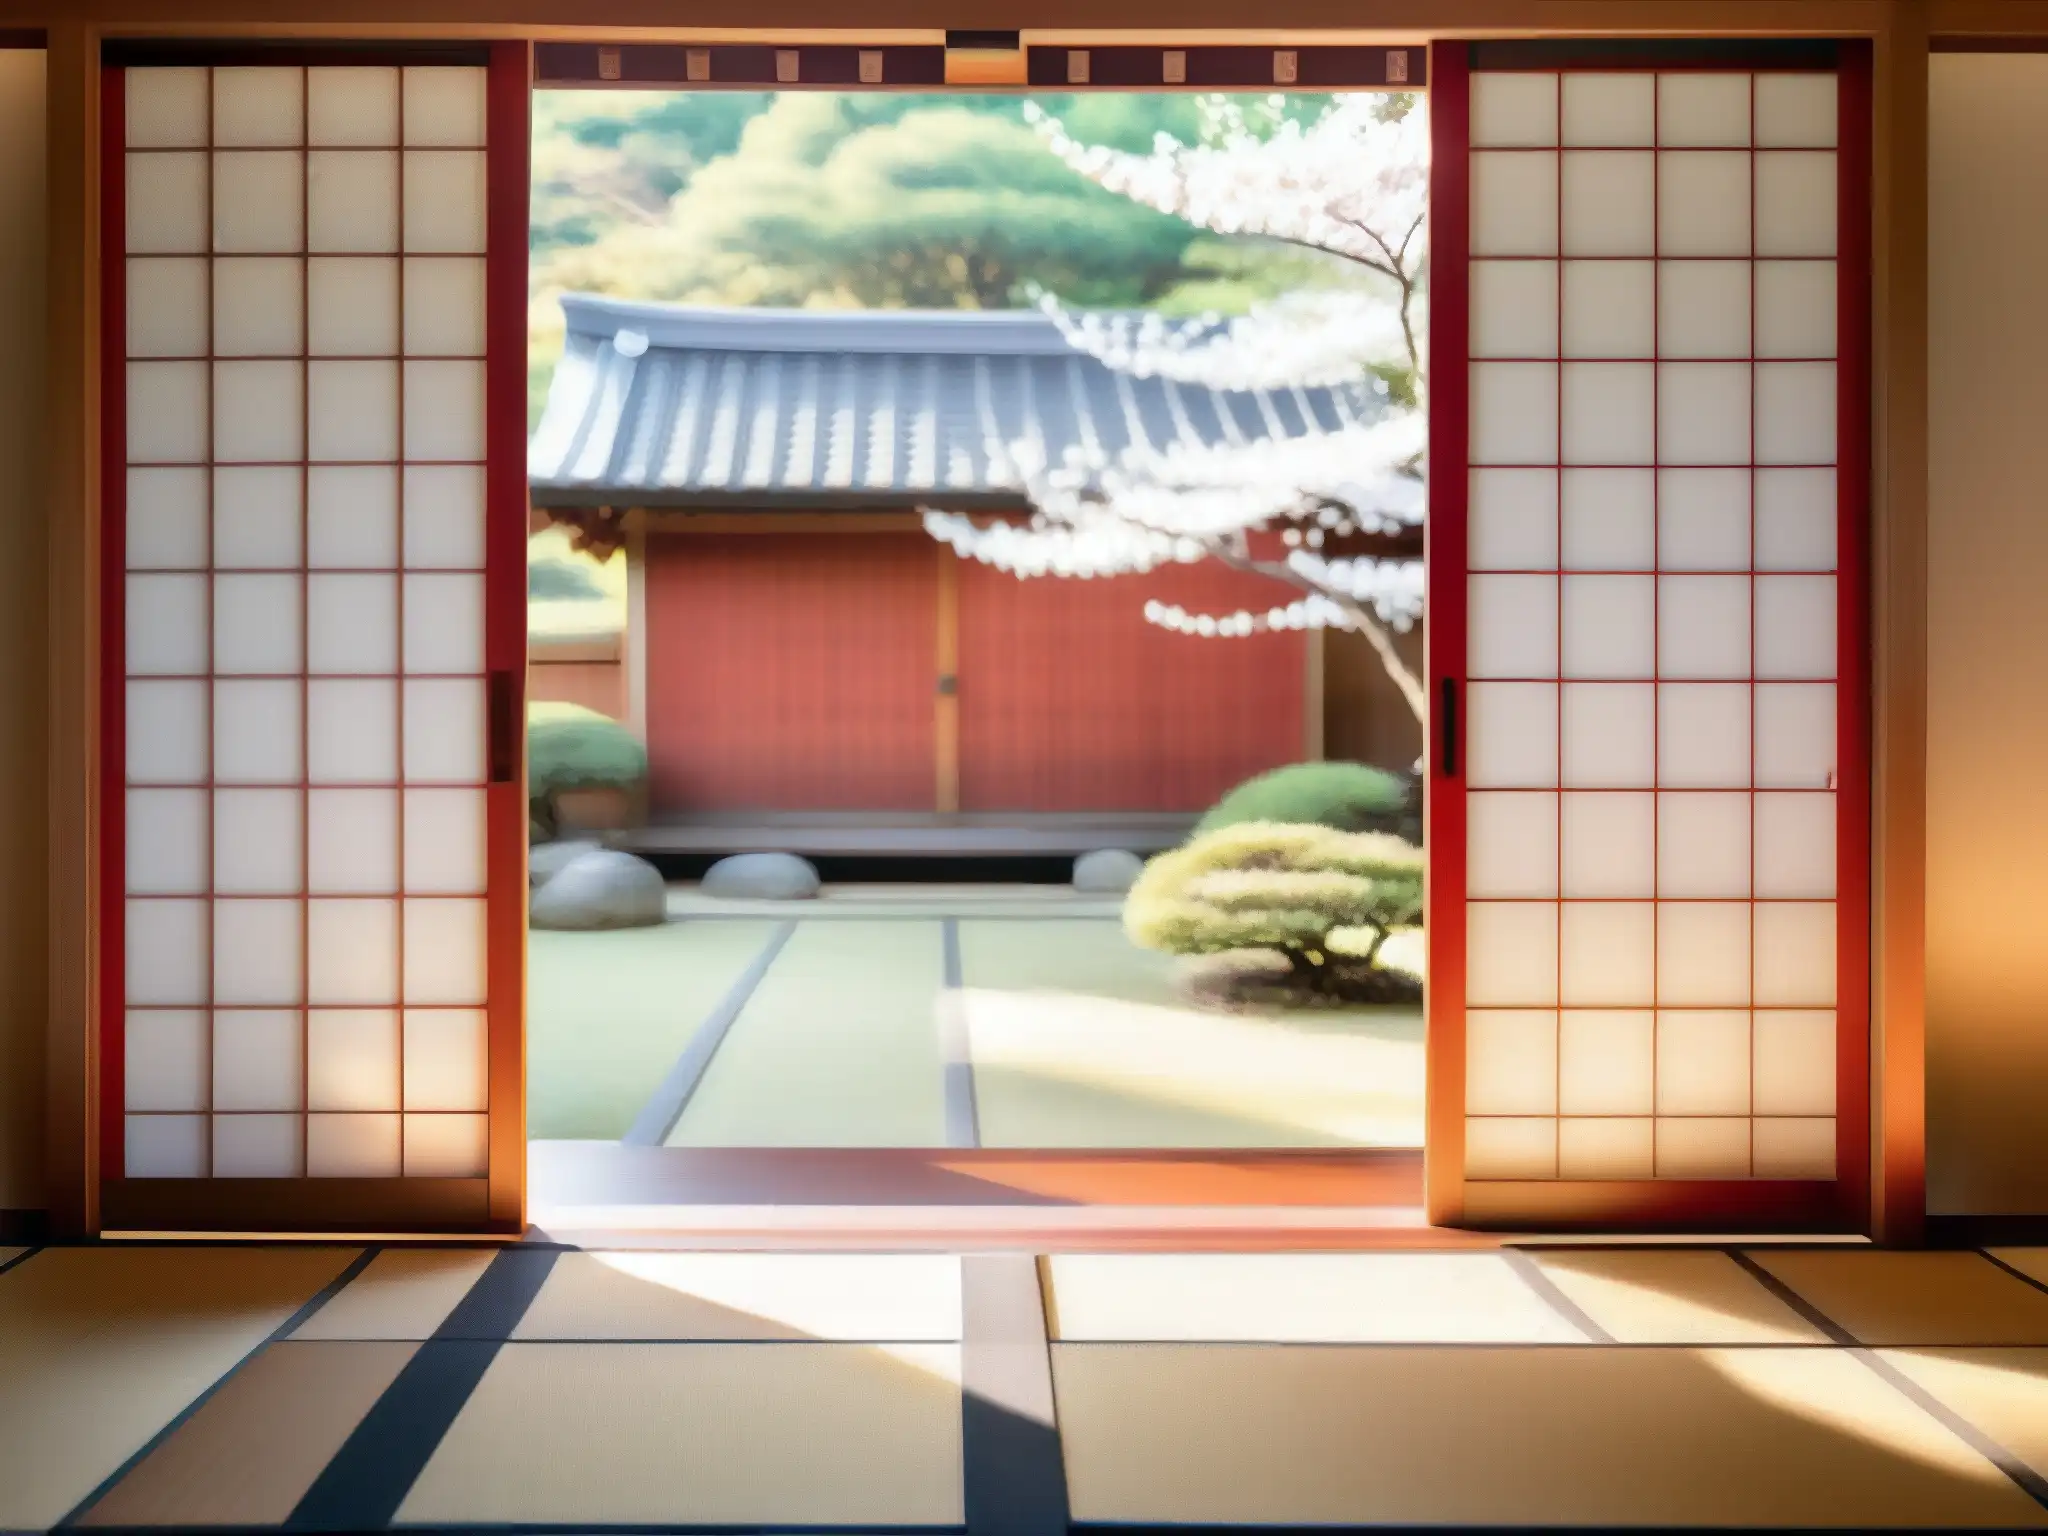 La Mujer de la Ventana Japón: Puerta shoji con patrón de cerezo y jardín japonés sereno al fondo, evocando tranquilidad y belleza atemporal